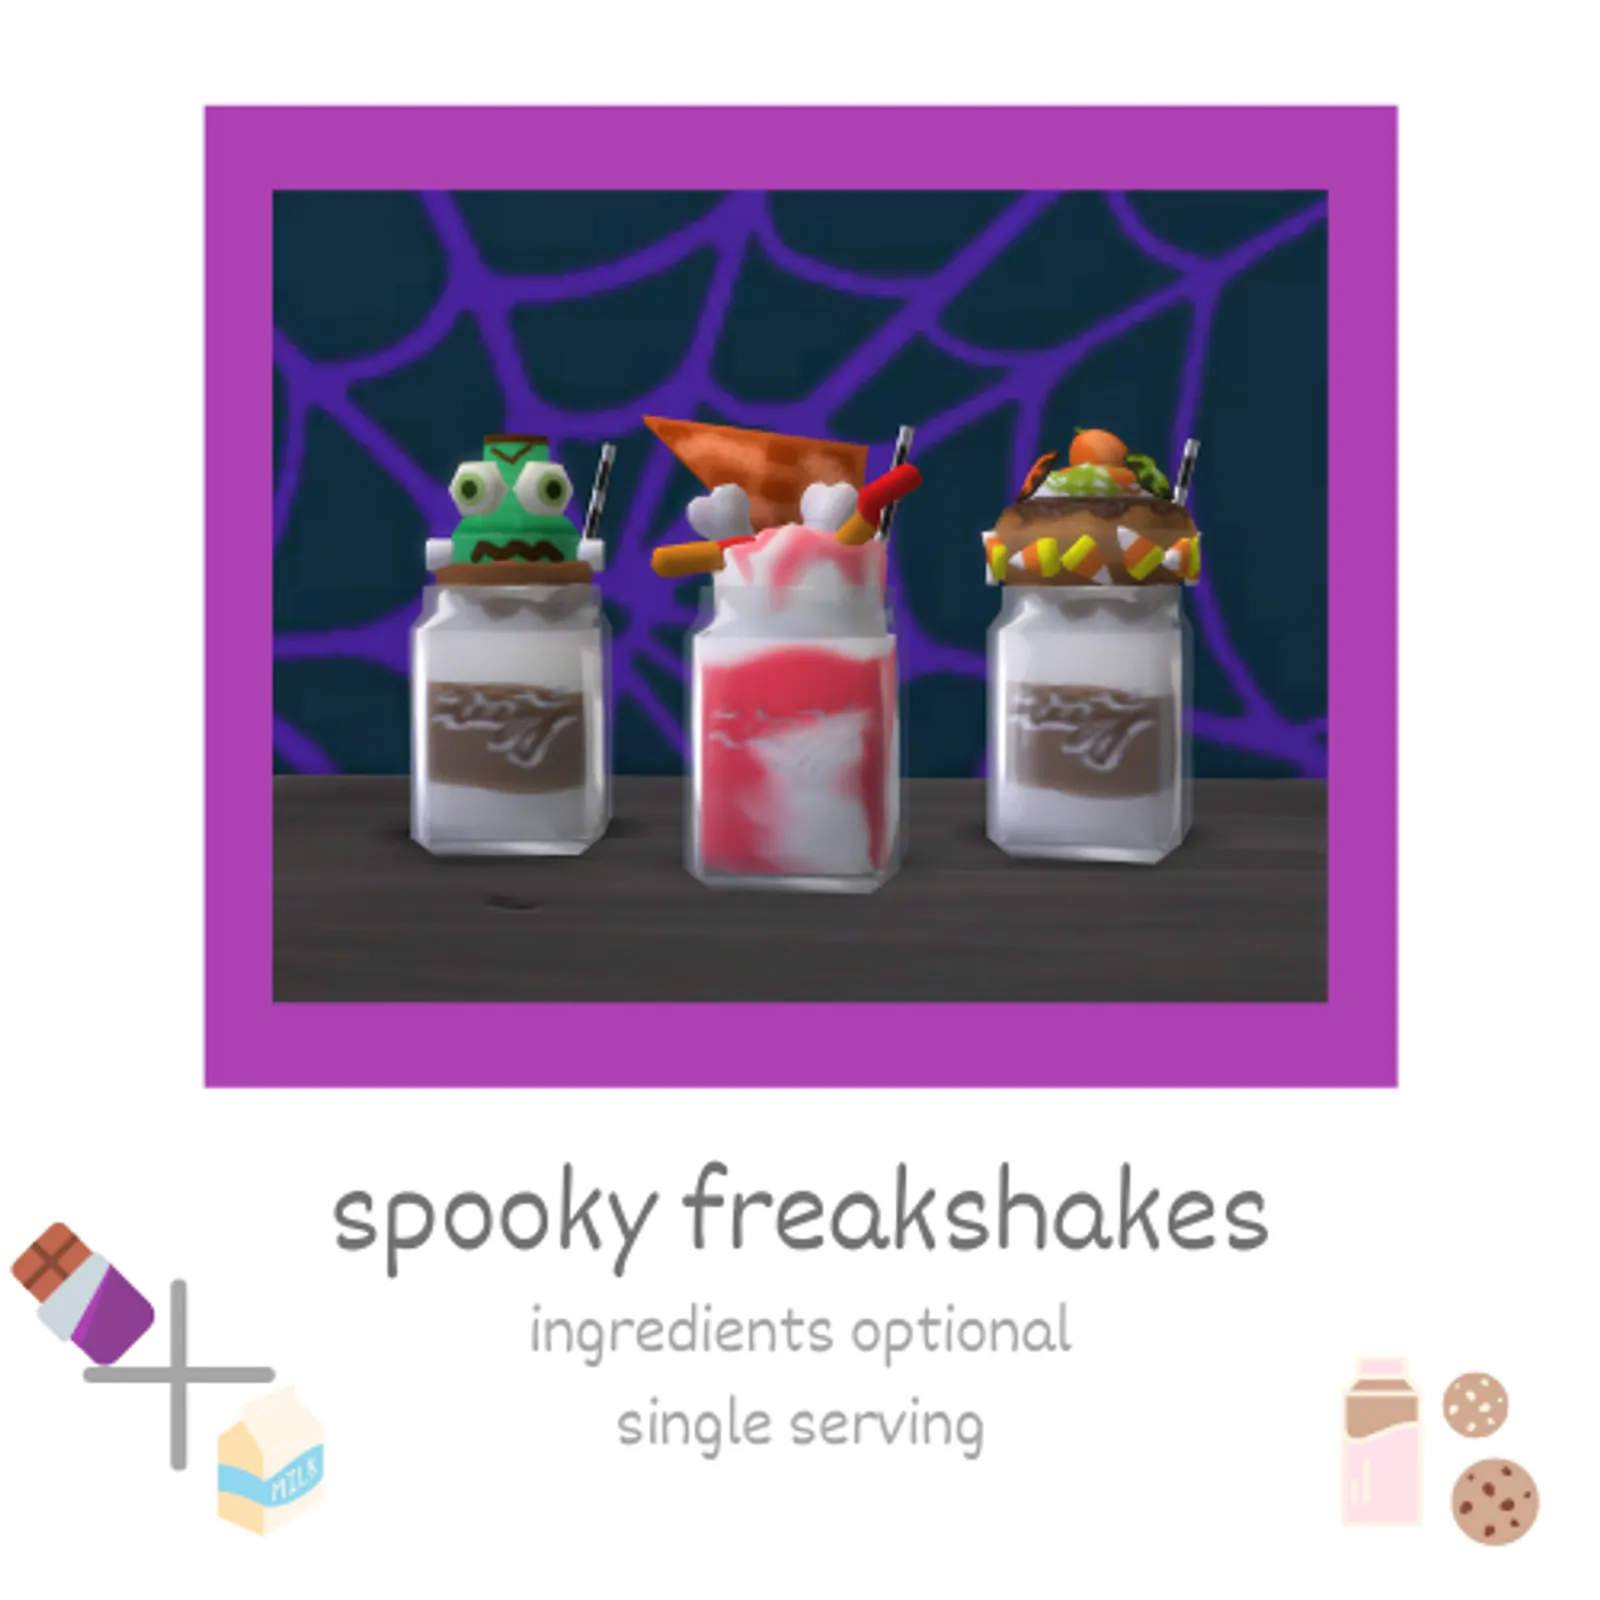 spooky freakshakes